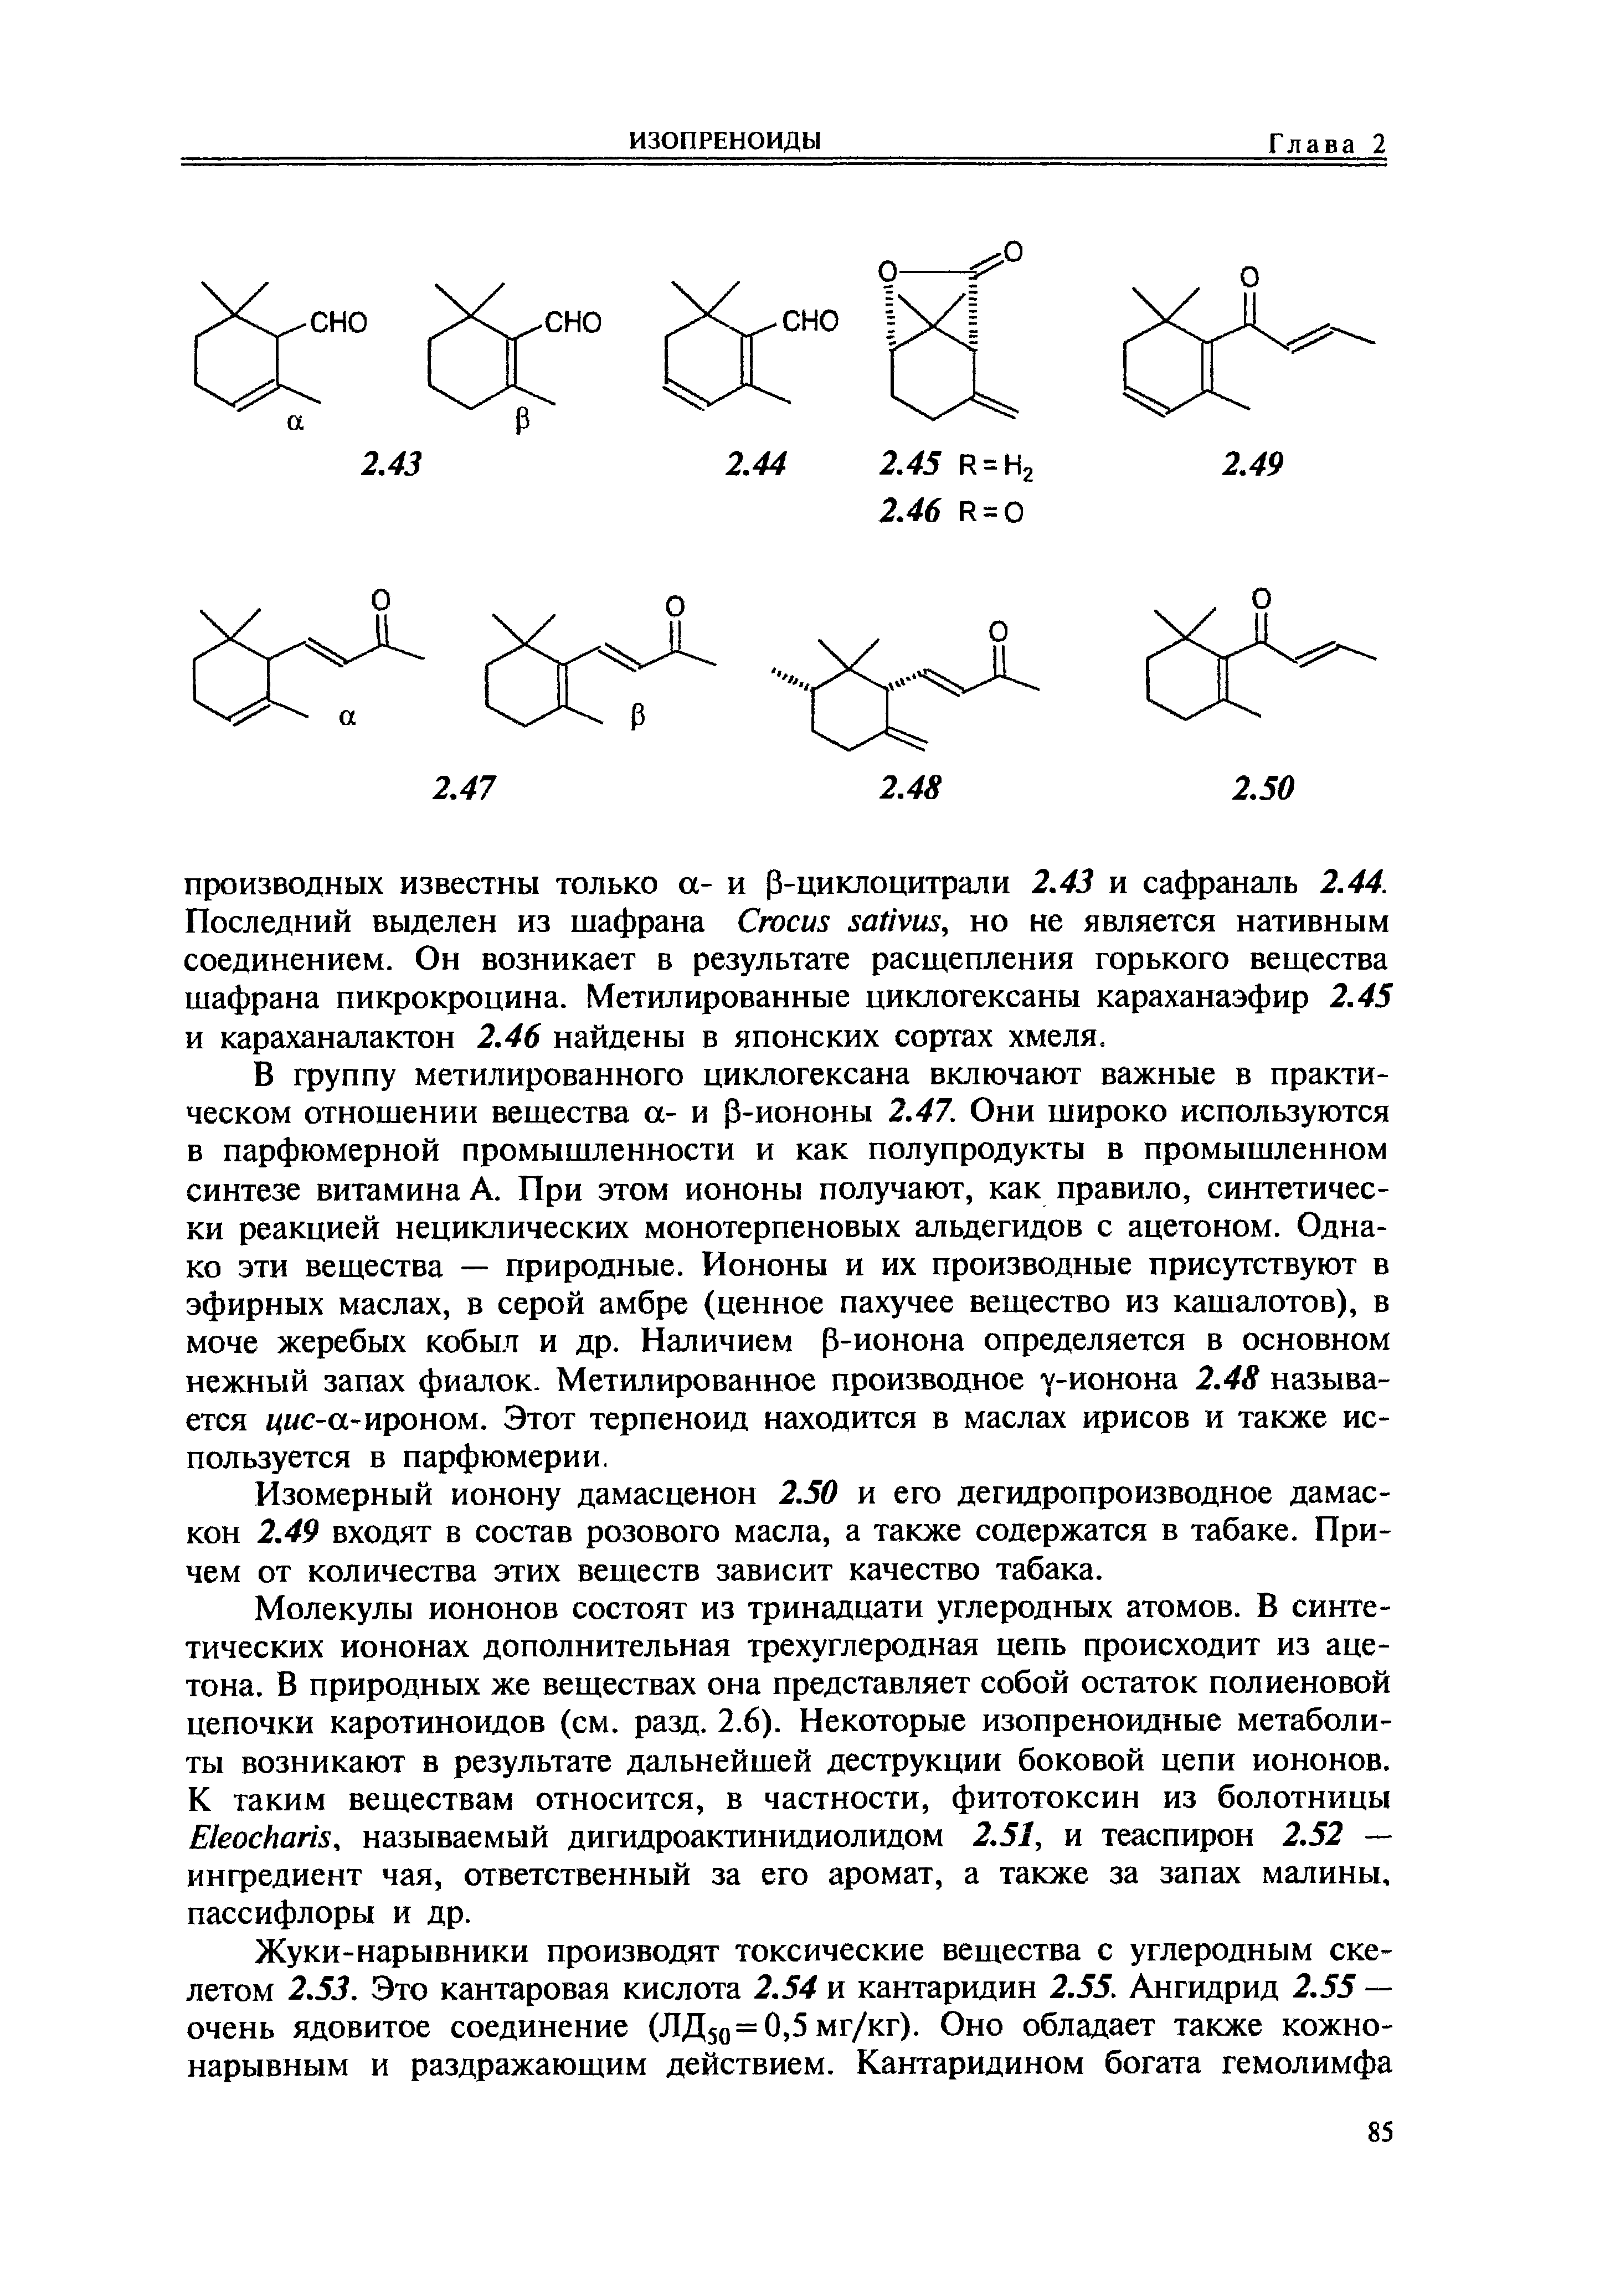 В группу метилированного циклогексана включают важные в практическом отношении вещества а- и 3-иононы 2.47. Они широко используются в парфюмерной промышленности и как полупродукты в промышленном синтезе витамина А. При этом иононы получают, как правило, синтетически реакцией нециклических монотерпеновых альдегидов с ацетоном. Однако эти вещества — природные. Иононы и их производные присутствуют в эфирных маслах, в серой амбре (ценное пахучее вещество из кашалотов), в моче жеребых кобыл и др. Наличием р-ионона определяется в основном нежный запах фиалок. Метилированное производное у-ионона 2.48 называется i M -a-np0H0M. Этот терпеноид находится в маслах ирисов и также используется в парфюмерии.